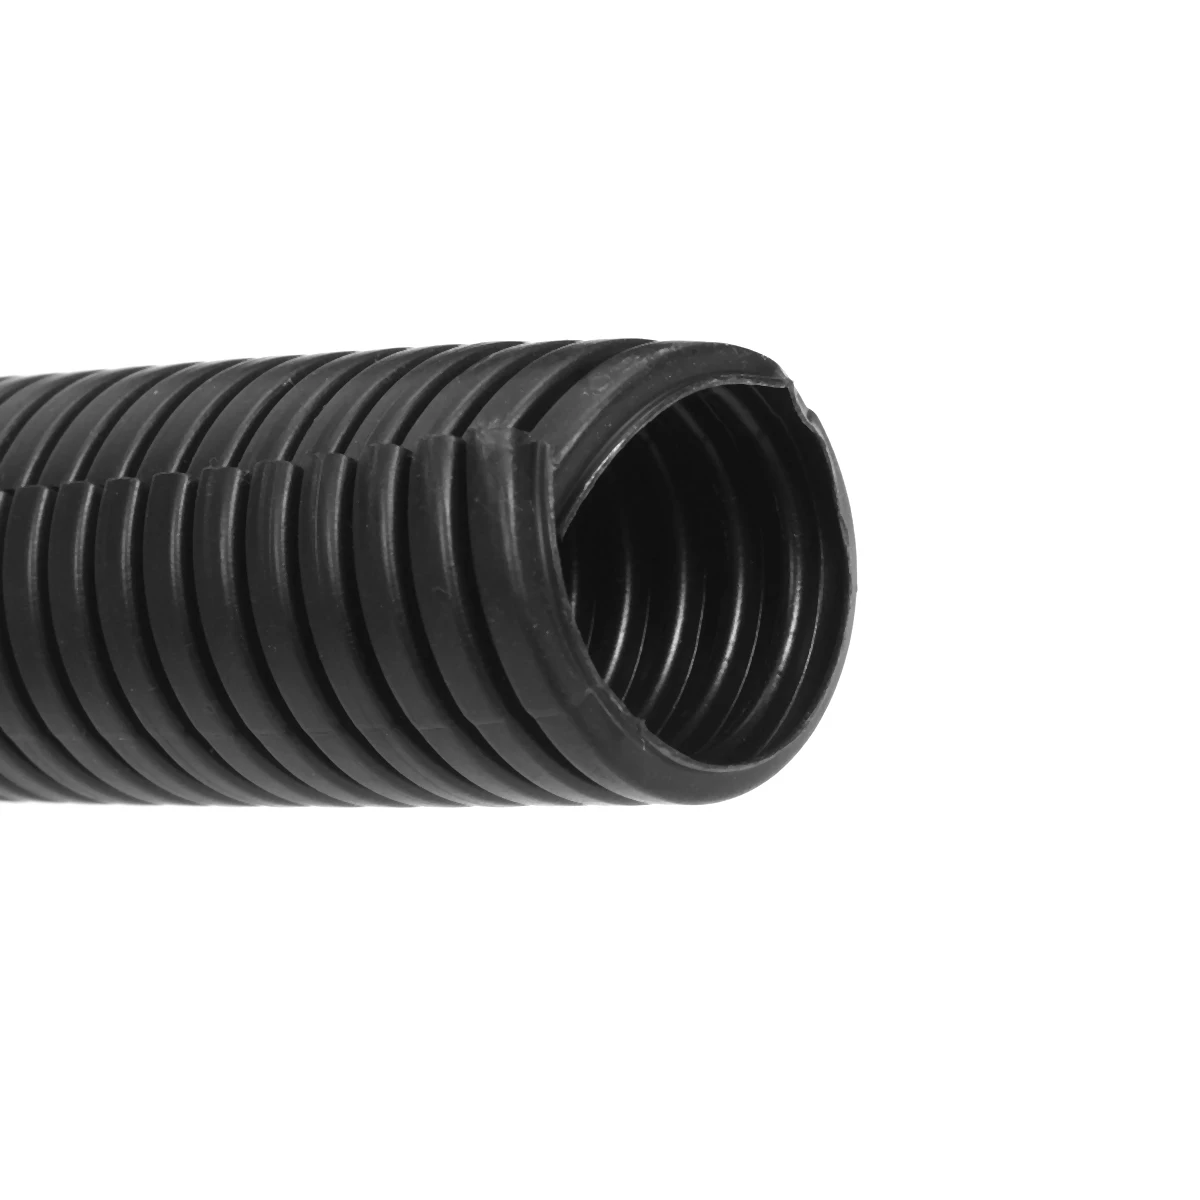 50Ft сплит-оплетка проводов рукав трубы полиэтилен черный термостойкий гибкий сильфон шланг гофрированная труба кабель